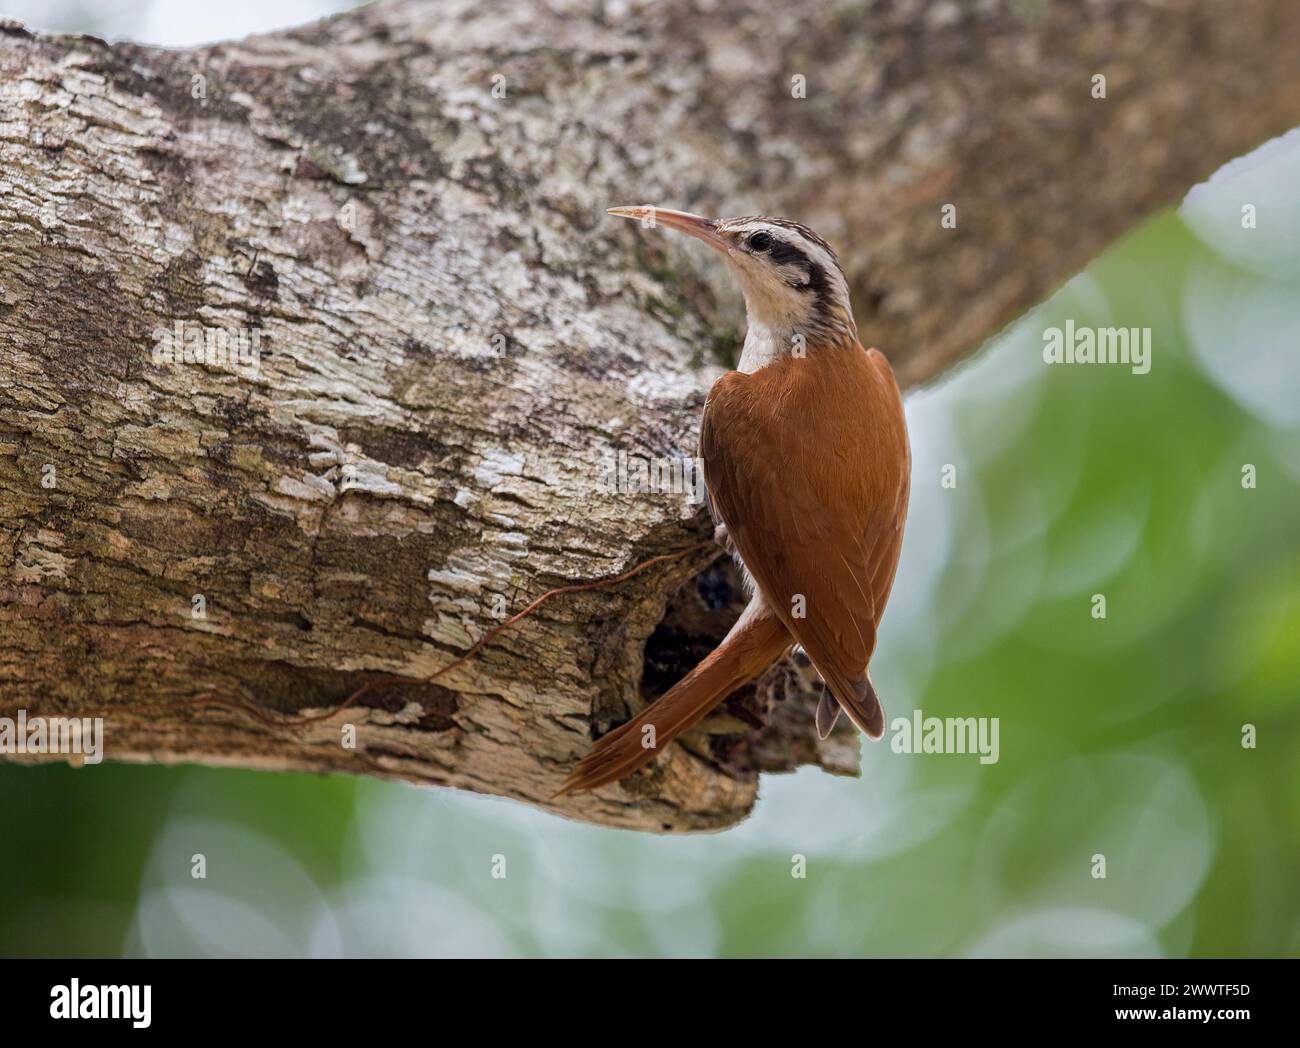 Crepuscolo in legno a becchi stretti (Lepidocolaptes angustirostris), arroccato su un ramo morto, vista laterale, Brasile, Pantanal Foto Stock